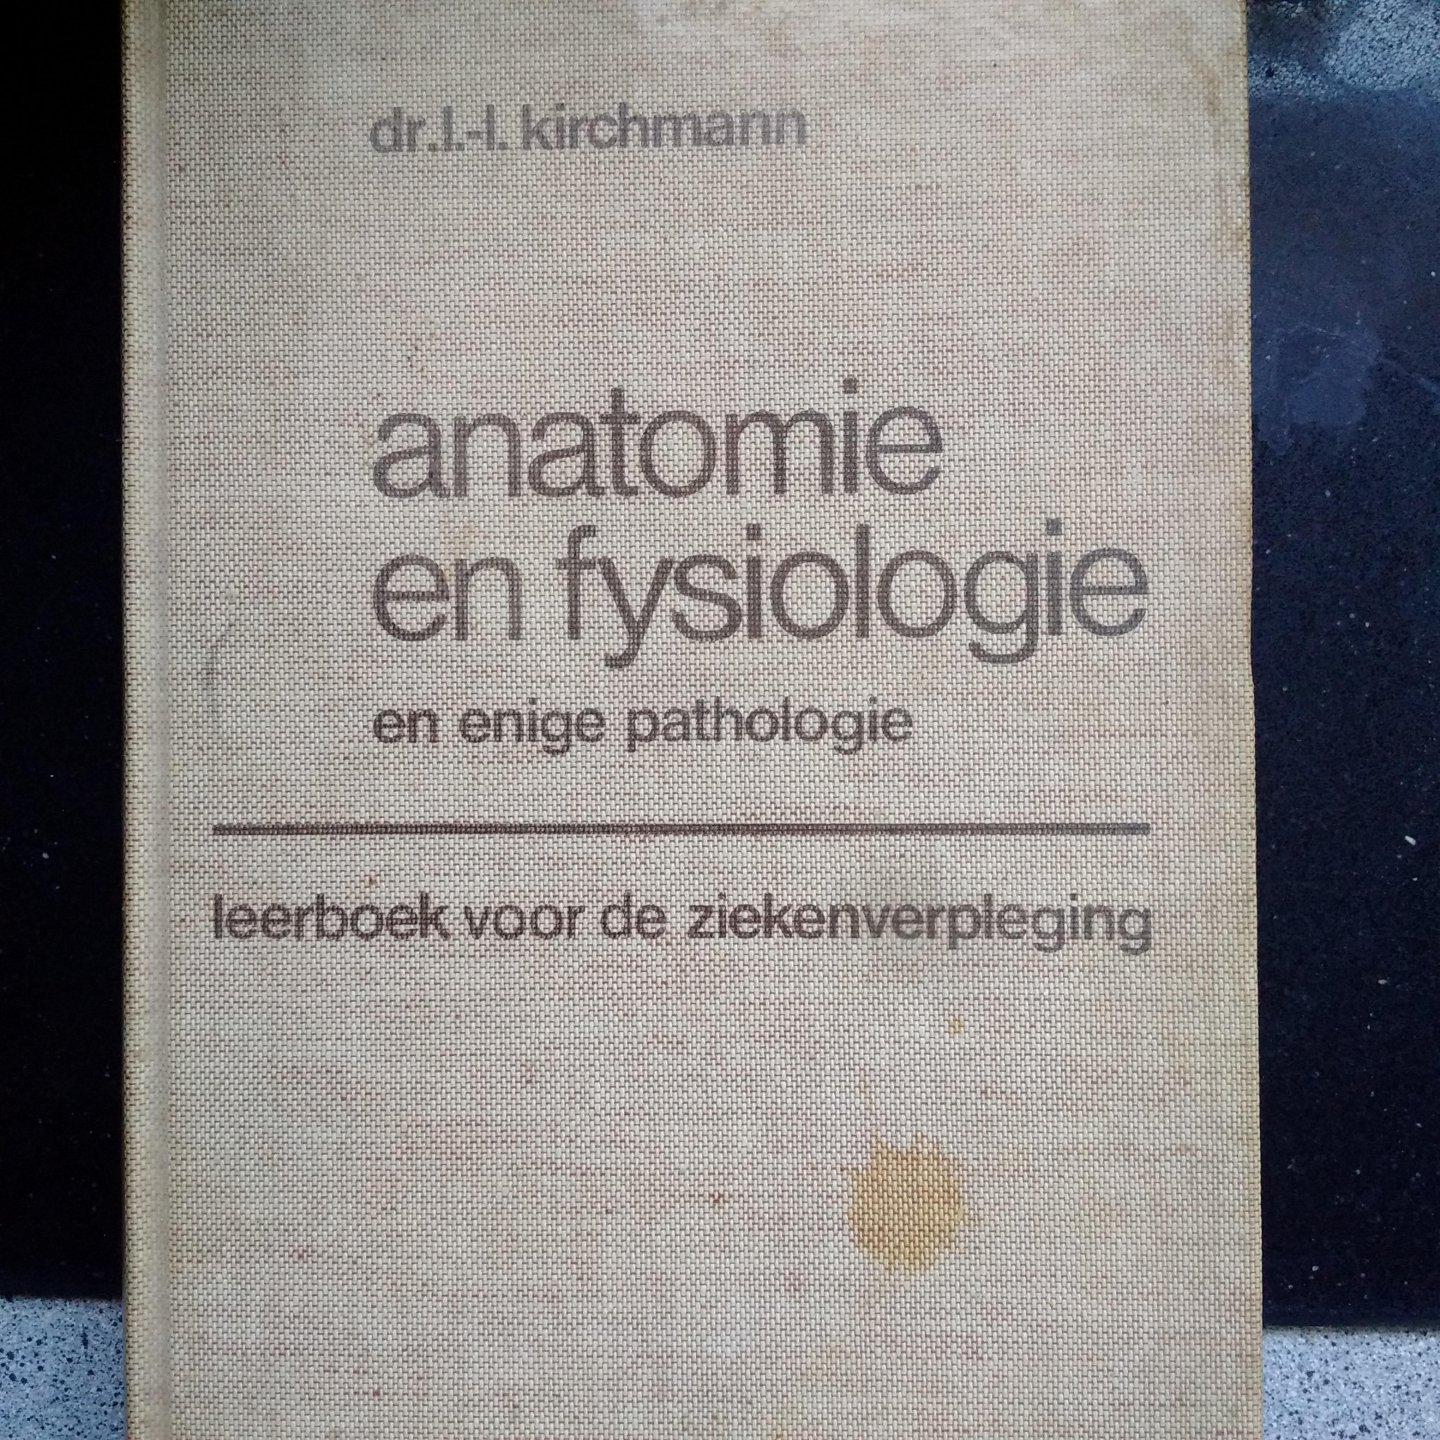 Kirchmann, Dr. L. - Anatomie en fysiologie en enige pathologie. Leerboek voor de ziekenverpleging